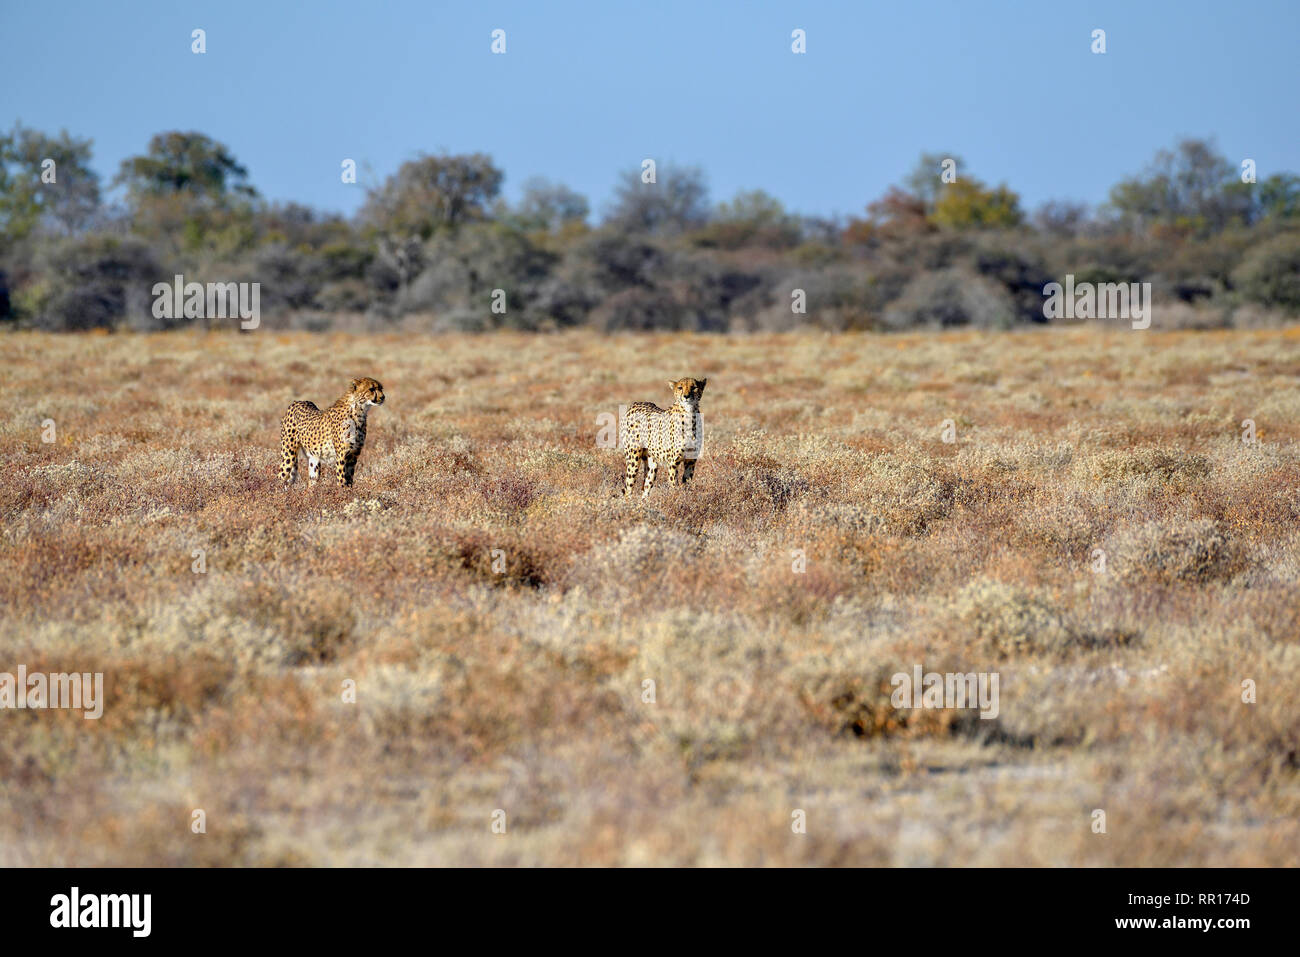 Zoologie, Säugetiere (Mammalia), zwei Geparden (Acinonyx jubatus), männliche Tiere, die von Namutoni, Etosha Na, Additional-Rights - Clearance-Info - Not-Available Stockfoto